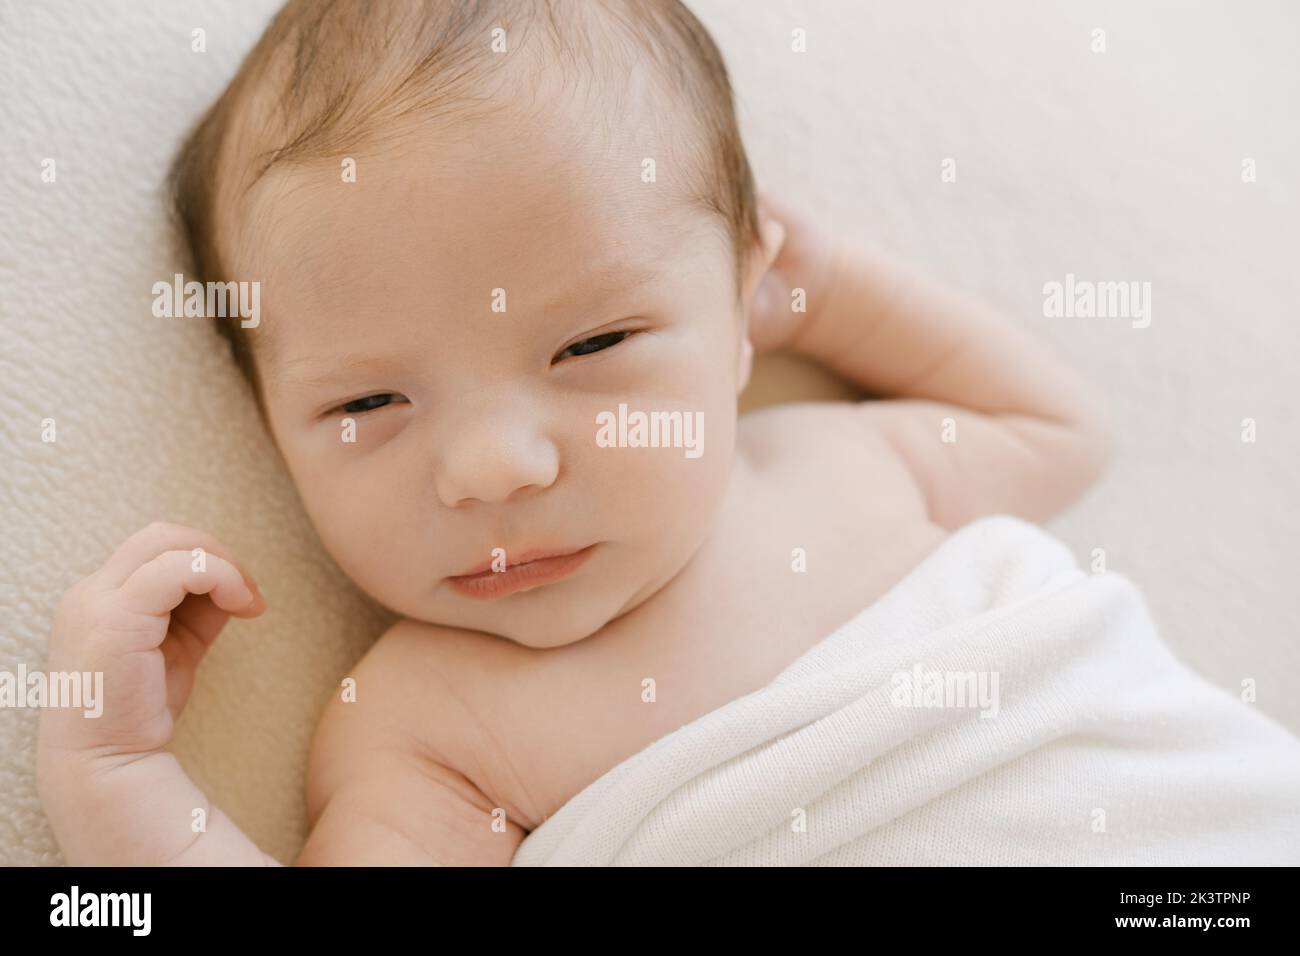 Desde arriba adorable bebé recién nacido envuelto en una suave manta durmiendo sobre fondo blanco Foto de stock